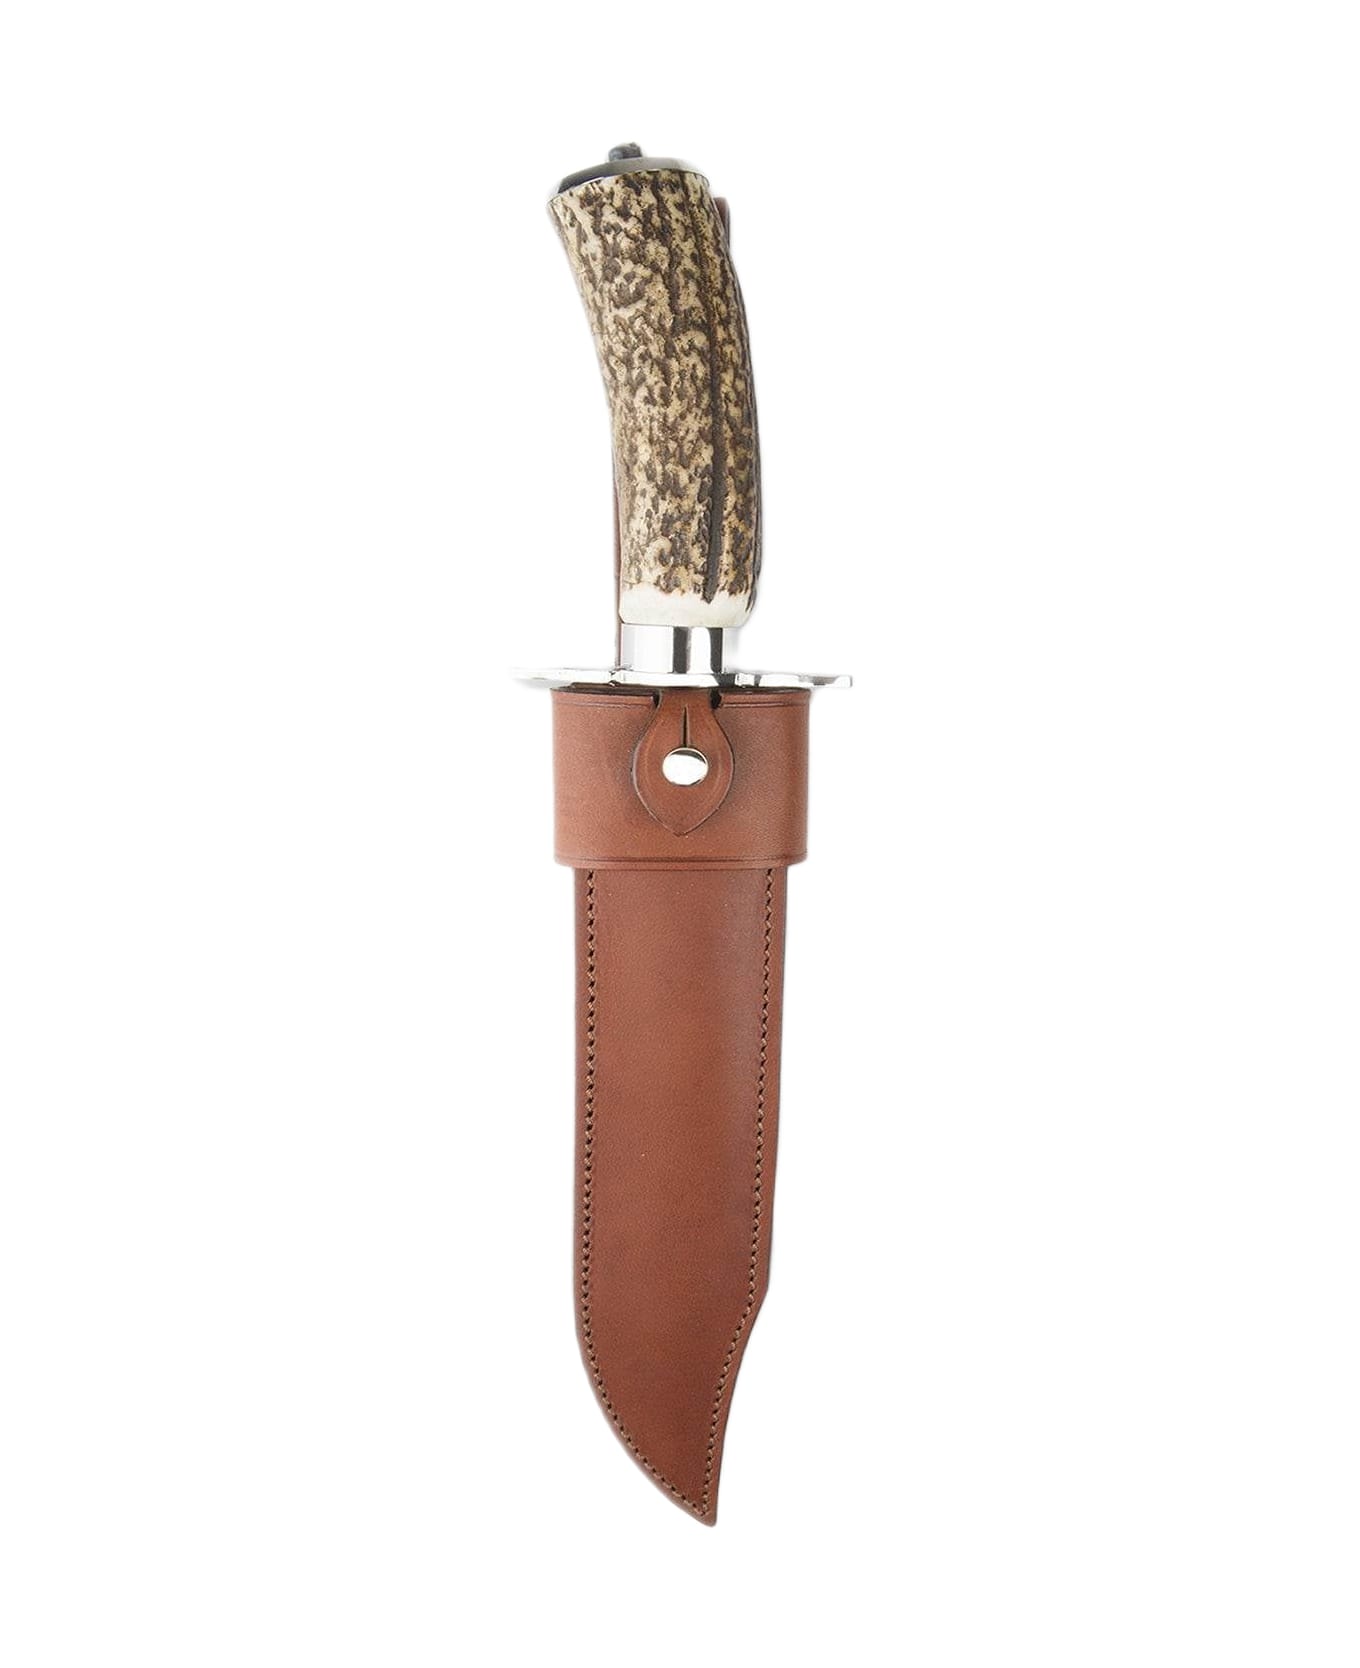 Larusmiani Hunting Dagger With Deer Antler Handle  - Neutral カトラリー